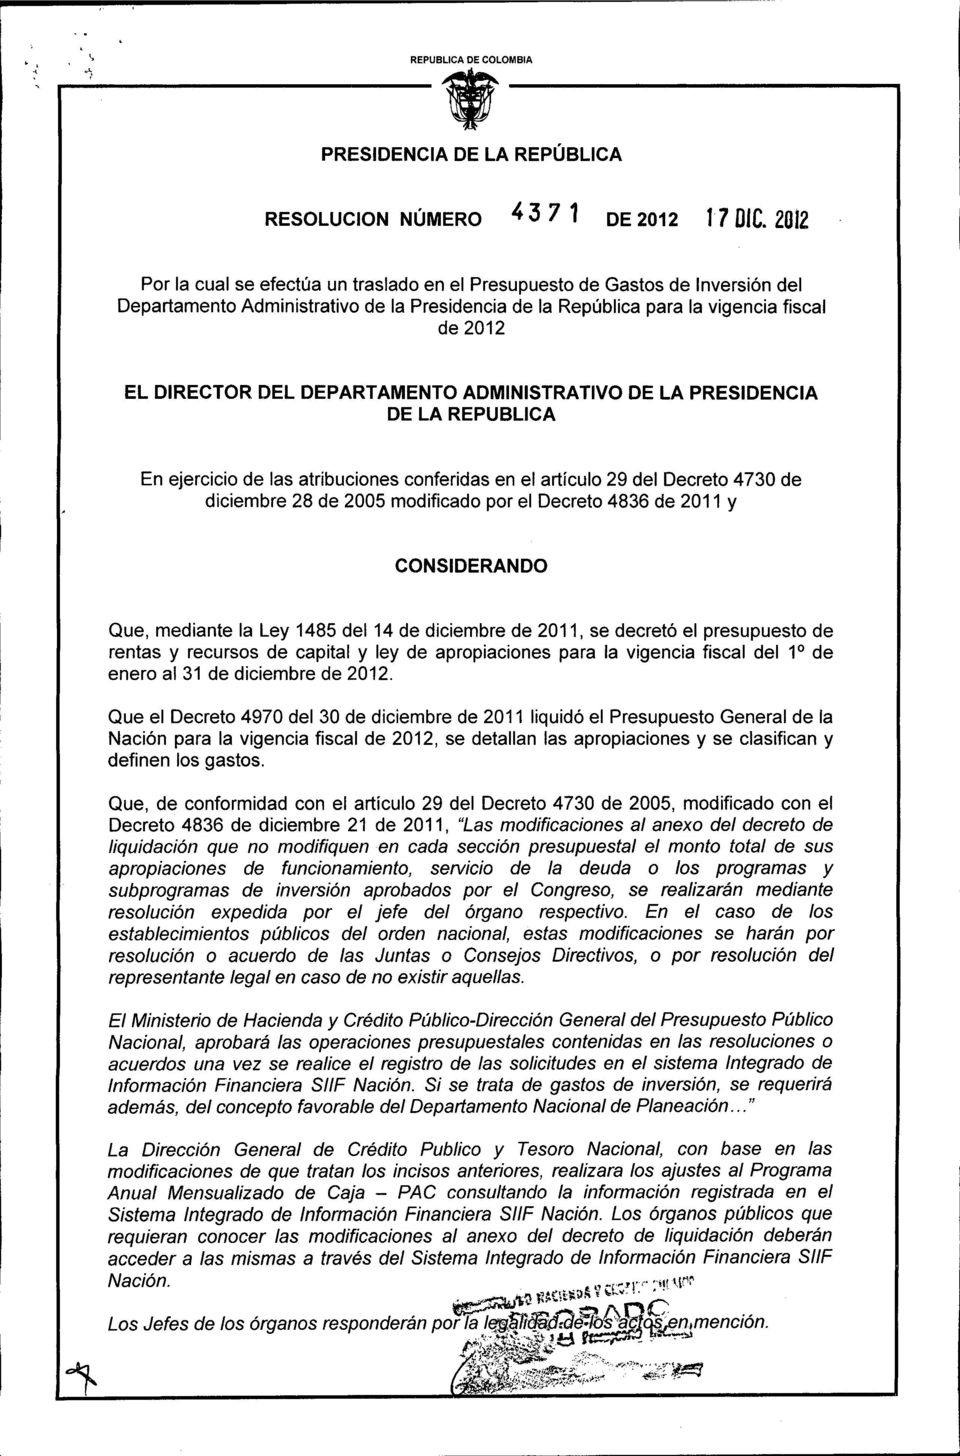 DEPARTAMENTO ADMINISTRATIVO DE LA PRESIDENCIA DE LA REPUBLlCA En ejercicio de las atribuciones conferidas en el artículo 29 del Decreto 4730 de diciembre 28 de 2005 modificado por el Decreto 4836 de